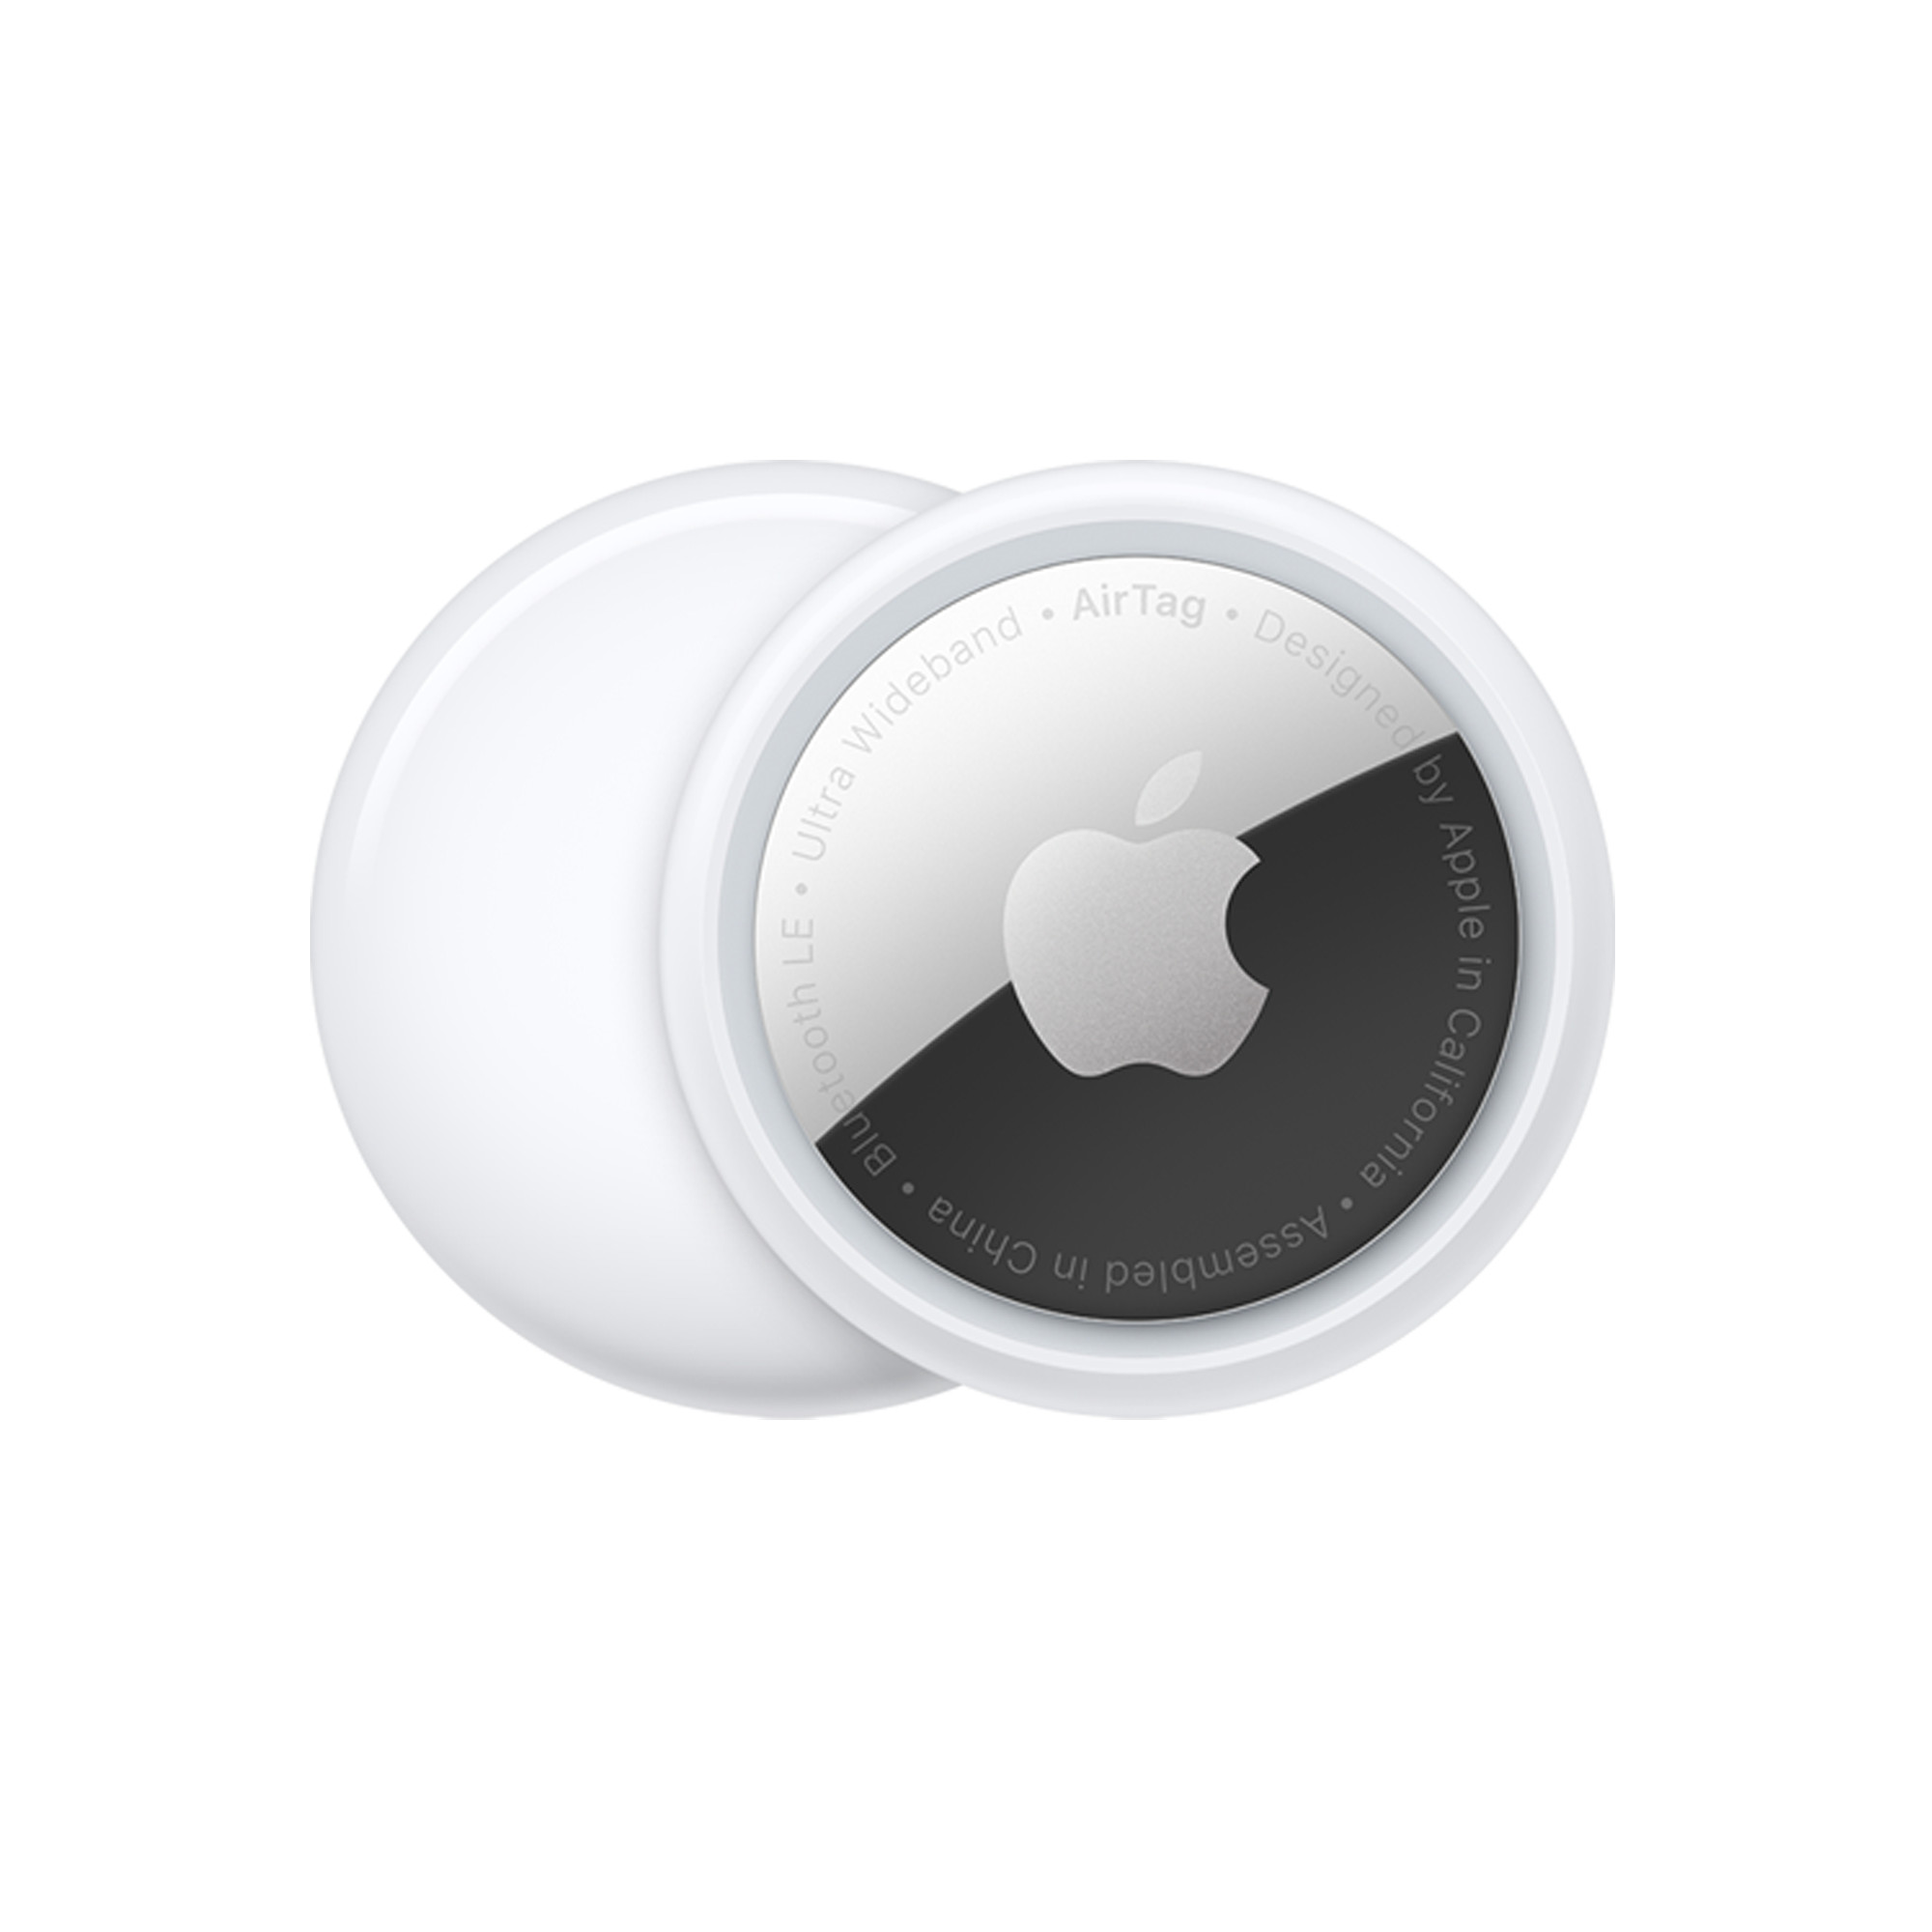 Localizador Antipérdida Apple Airtag Bluetooth Nfc